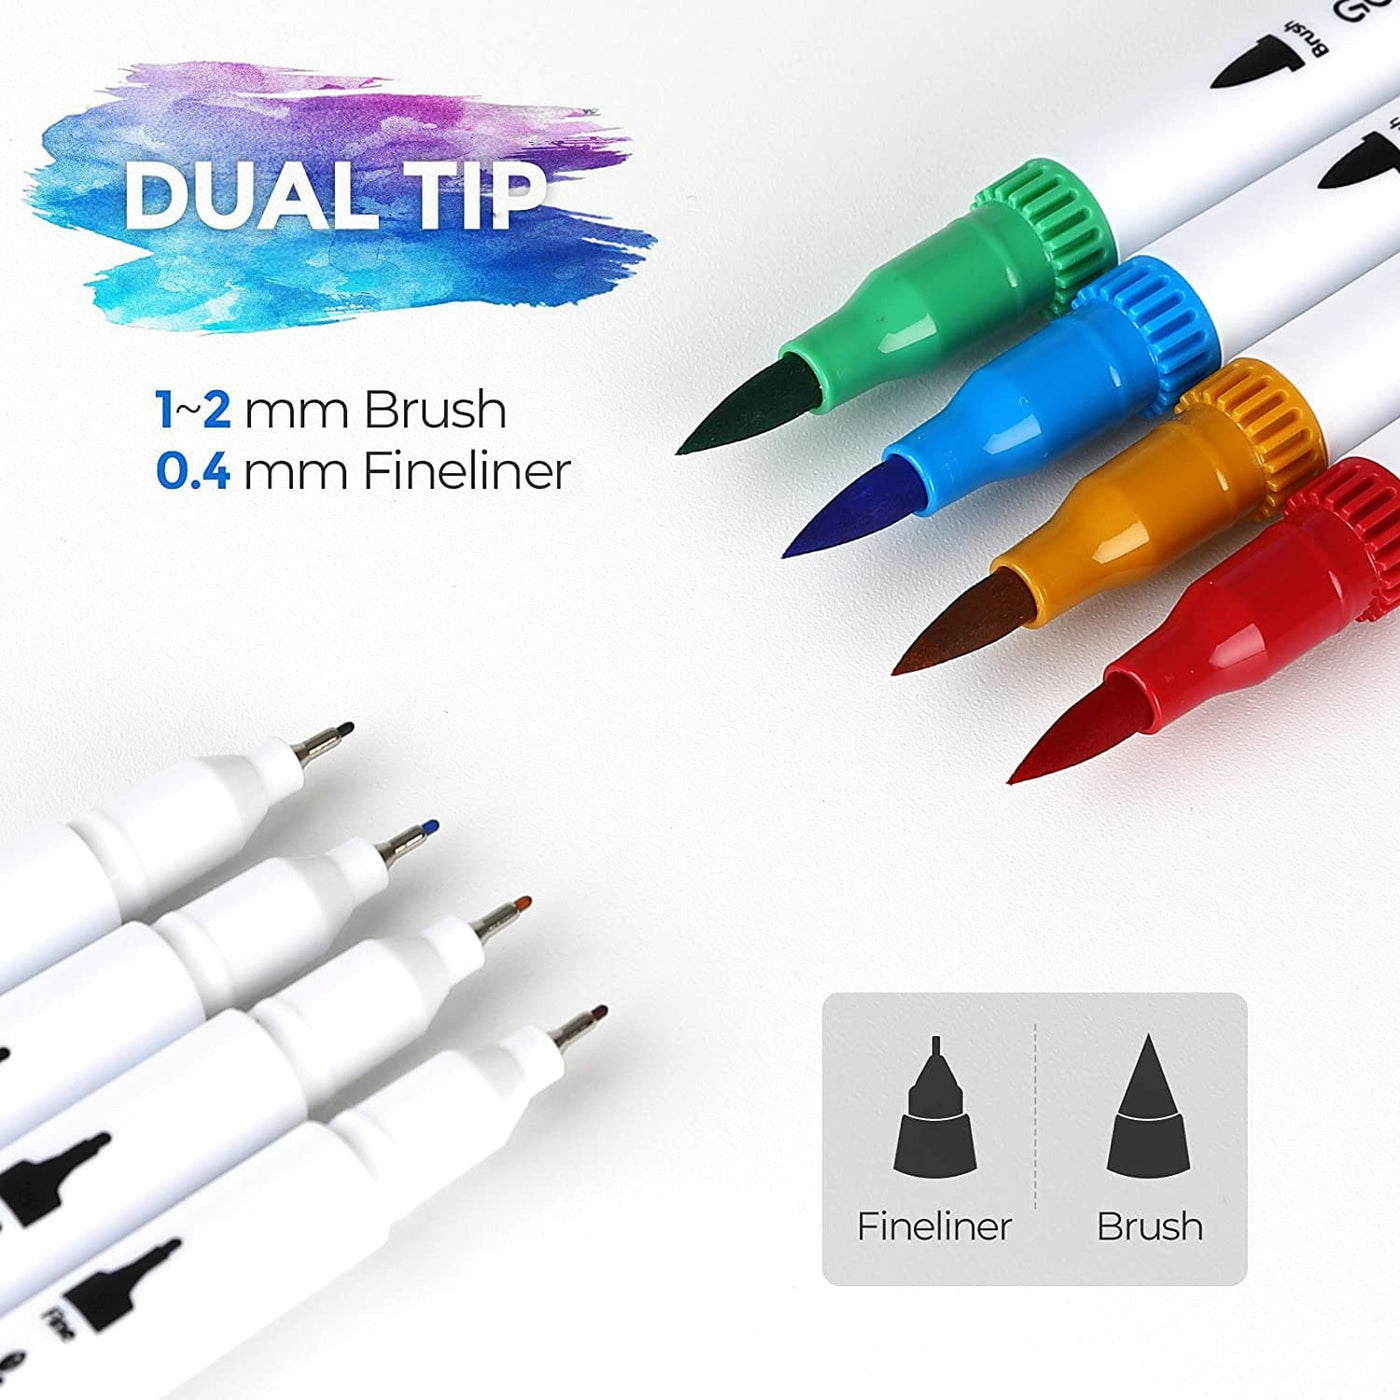 Fineliner & Brush pens